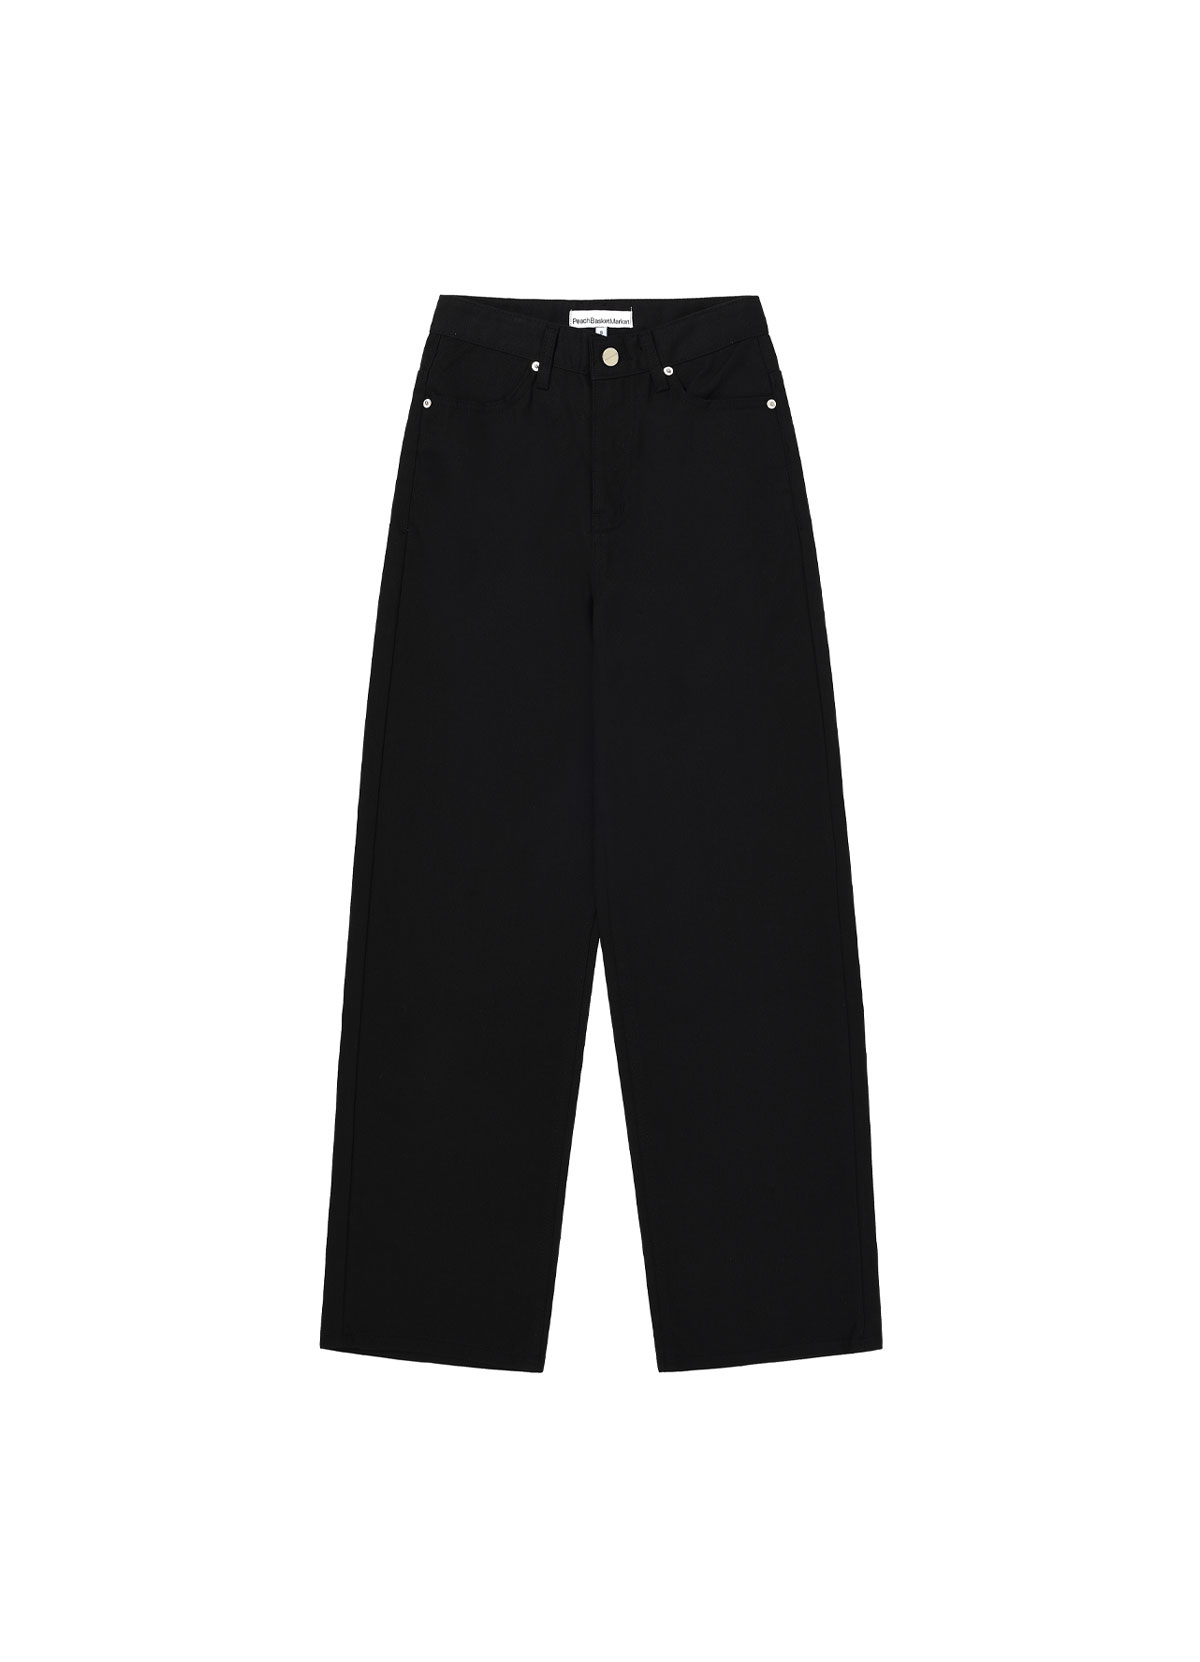 Cotton Pants (black)